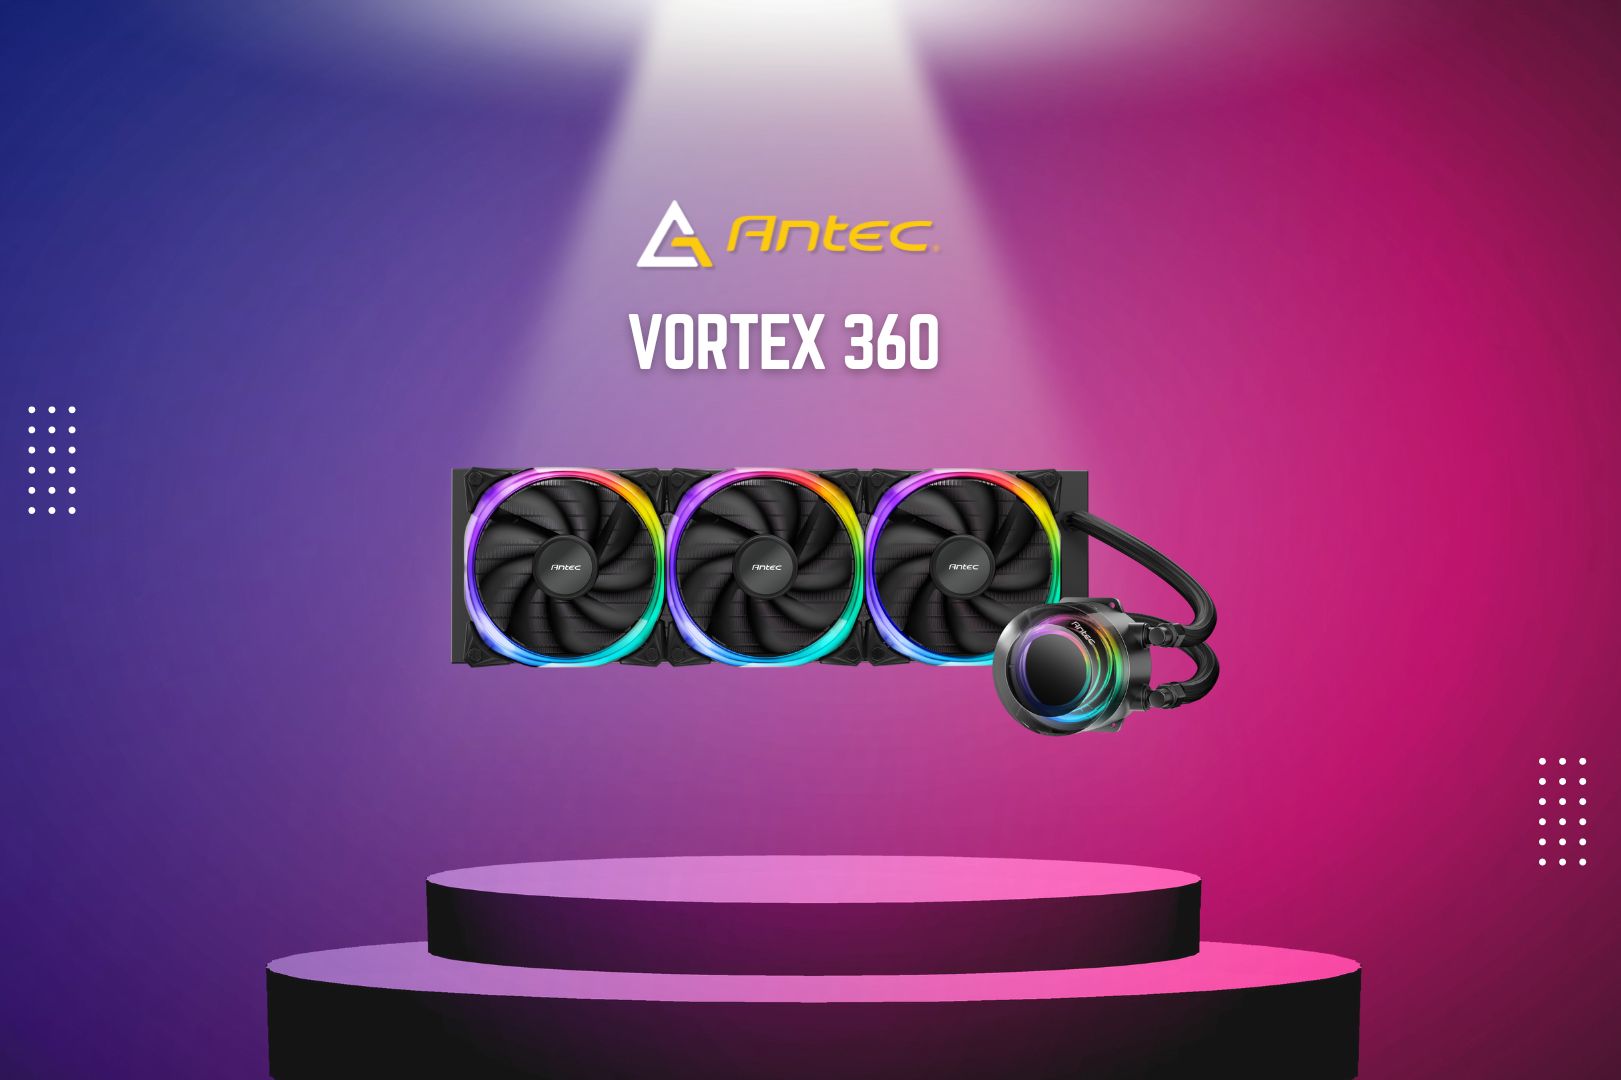 Vortex 360 ARGB